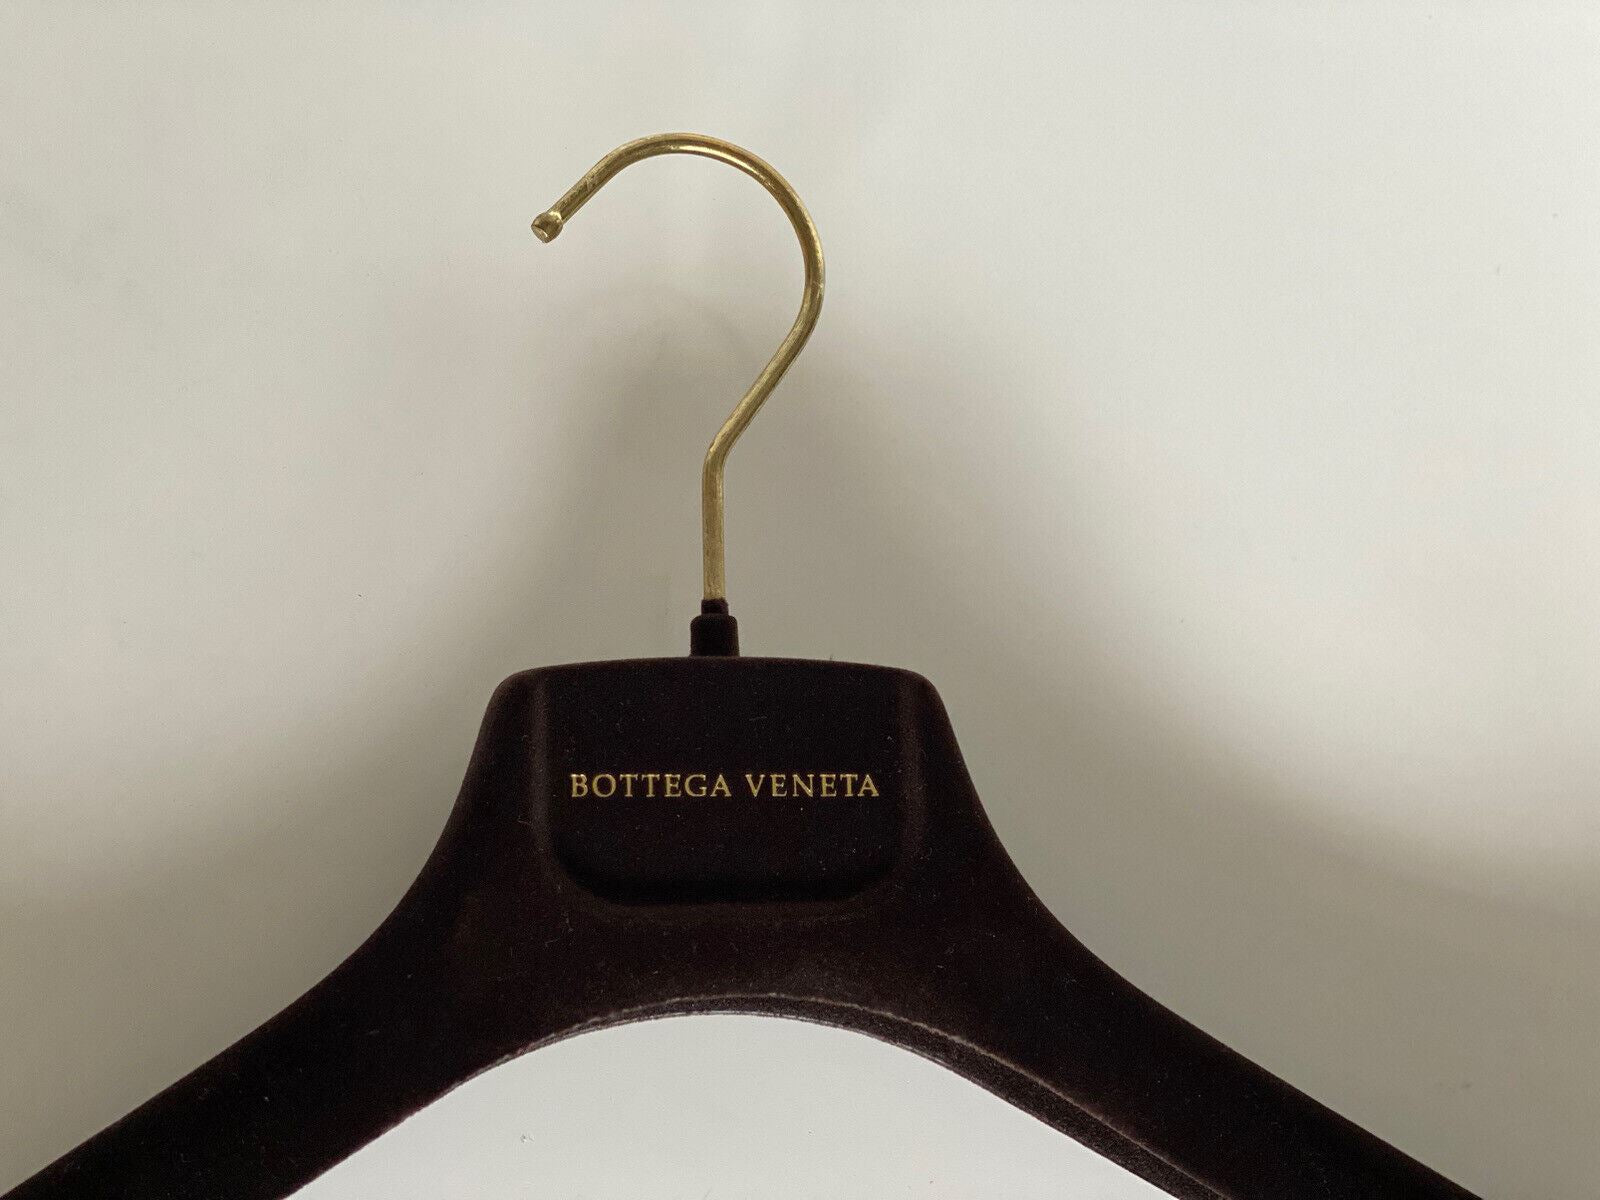 Bottega Veneta Brown Velvet Blazer Sweater Hangers with Gold Hardware 17.75x7x2